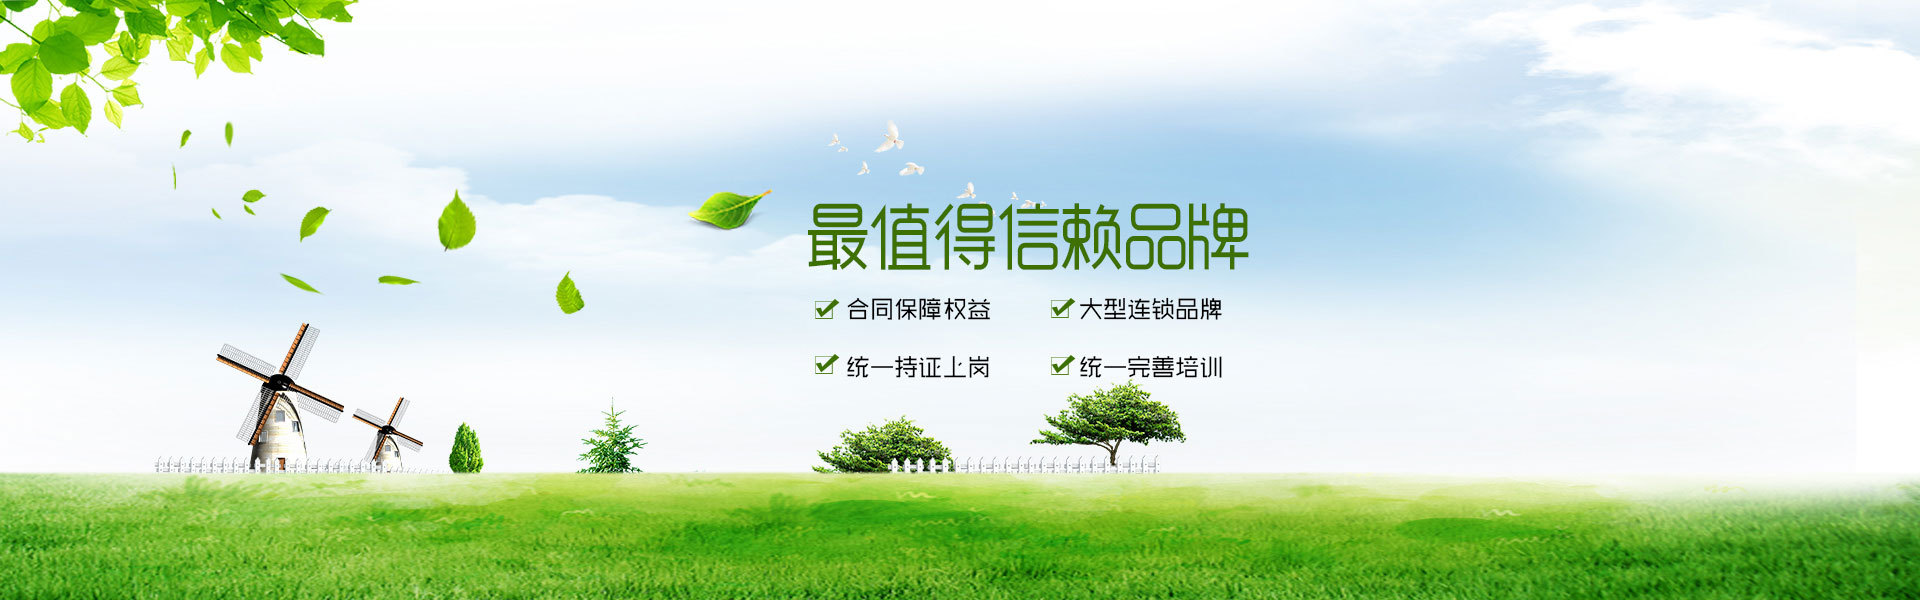 武汉土力肥业有限公司网站形象图之一